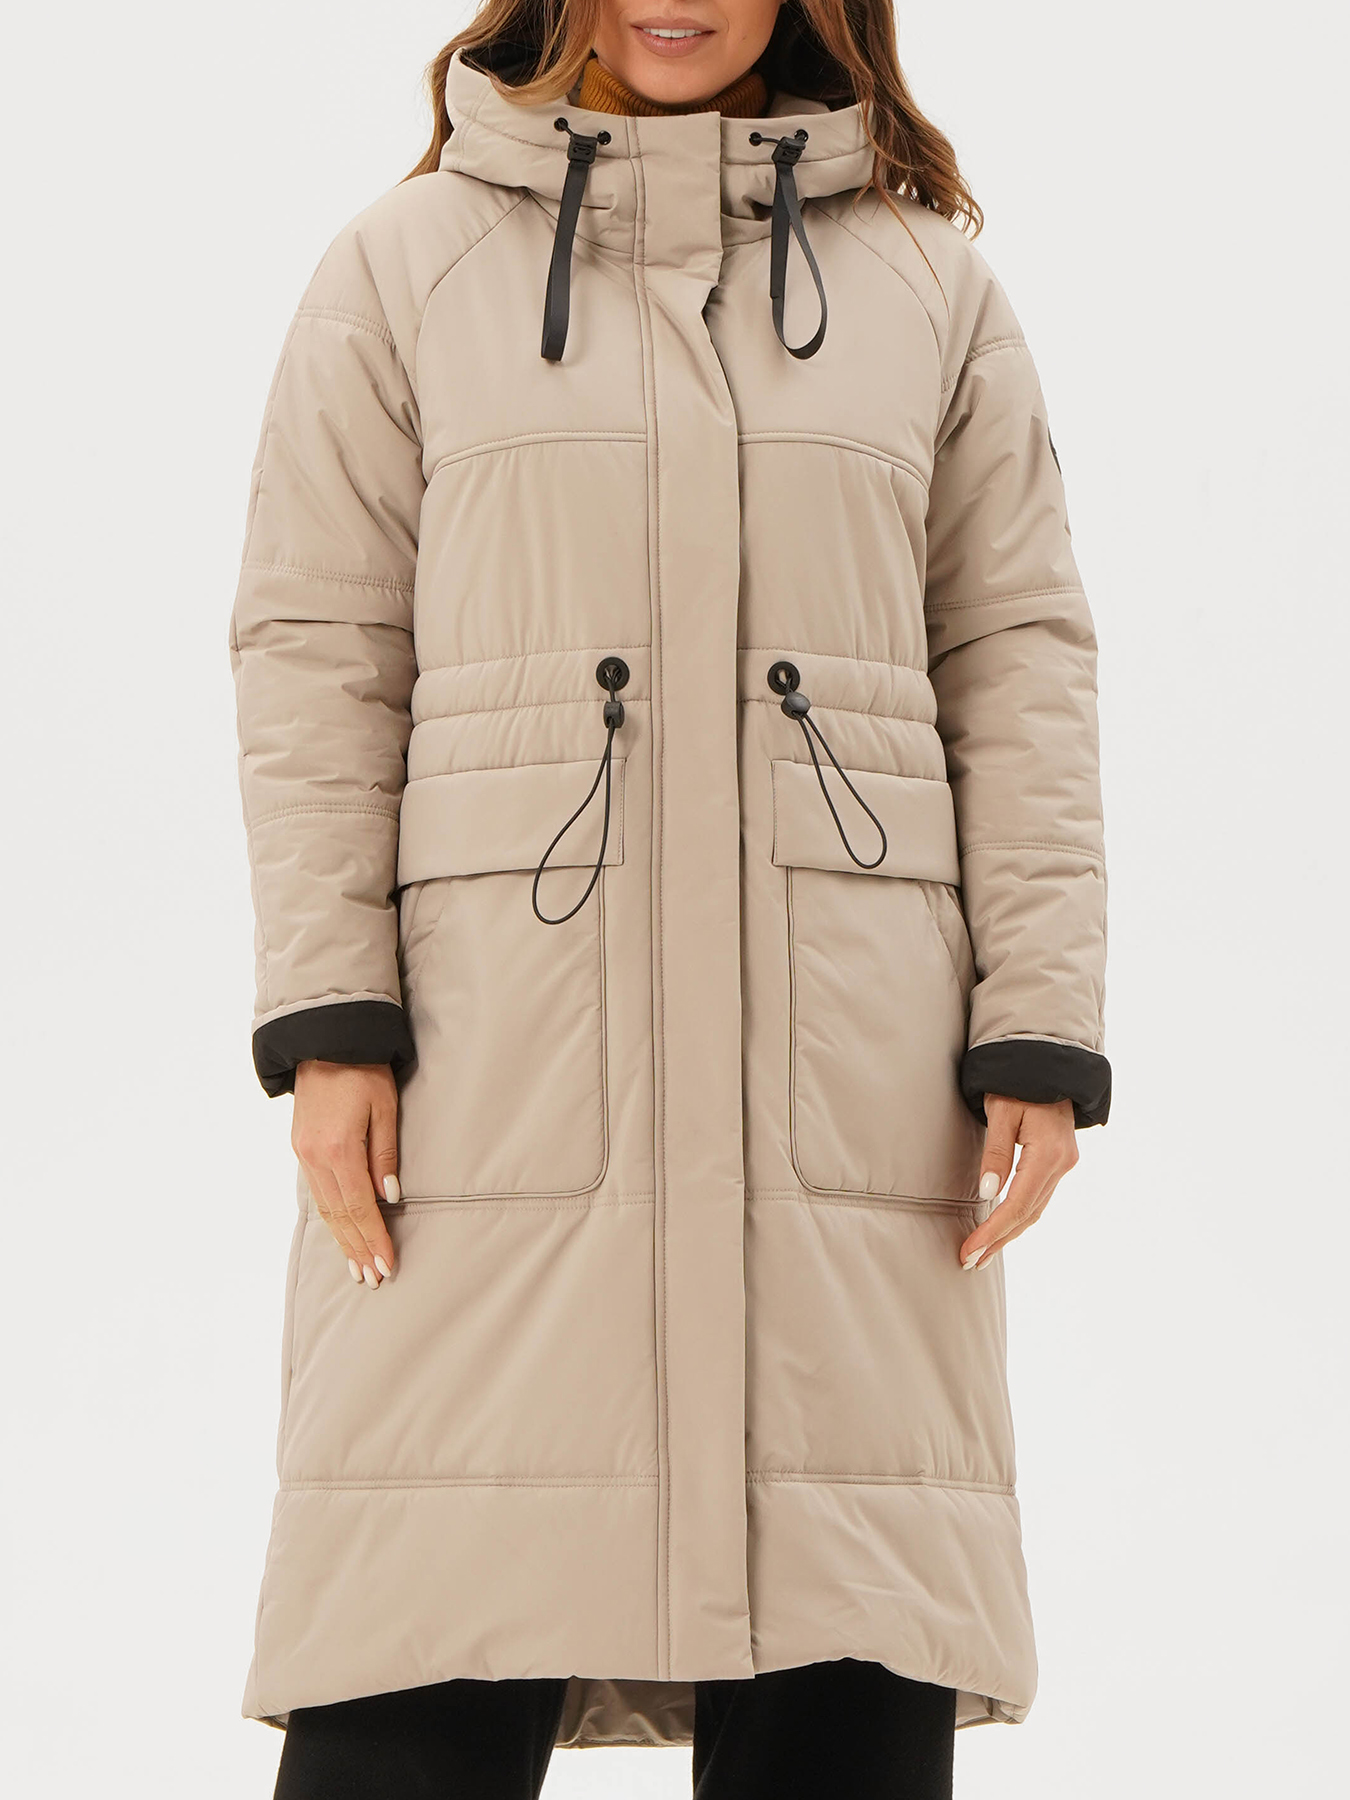 Пальто зимнее Maritta 433564-024, цвет бежевый, размер 52